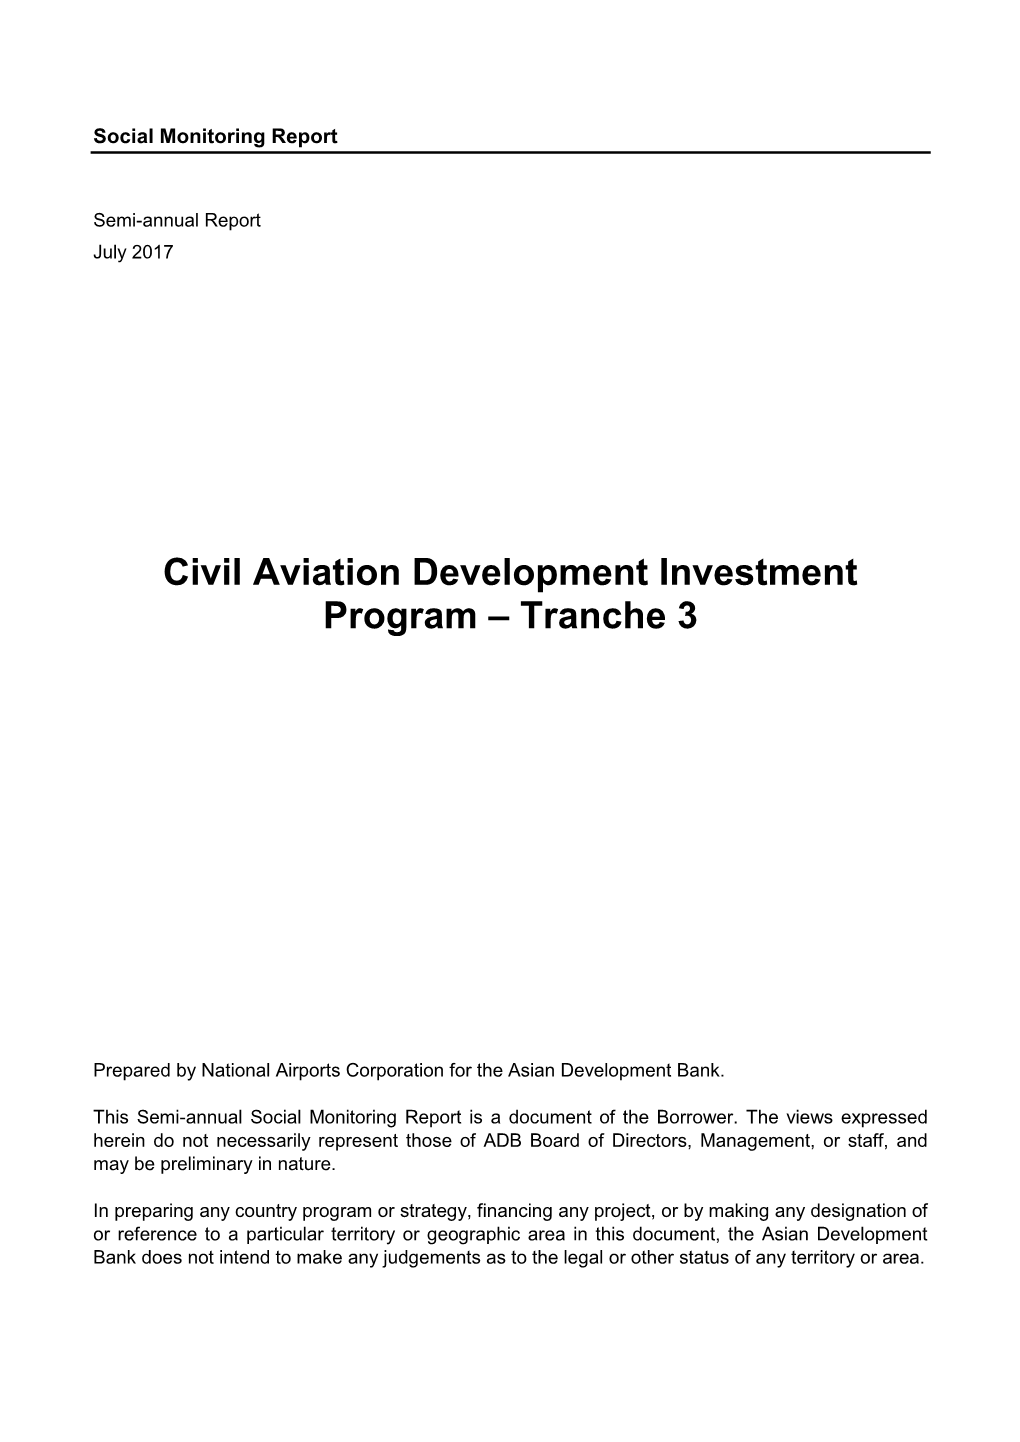 Civil Aviation Development Investment Program – Tranche 3